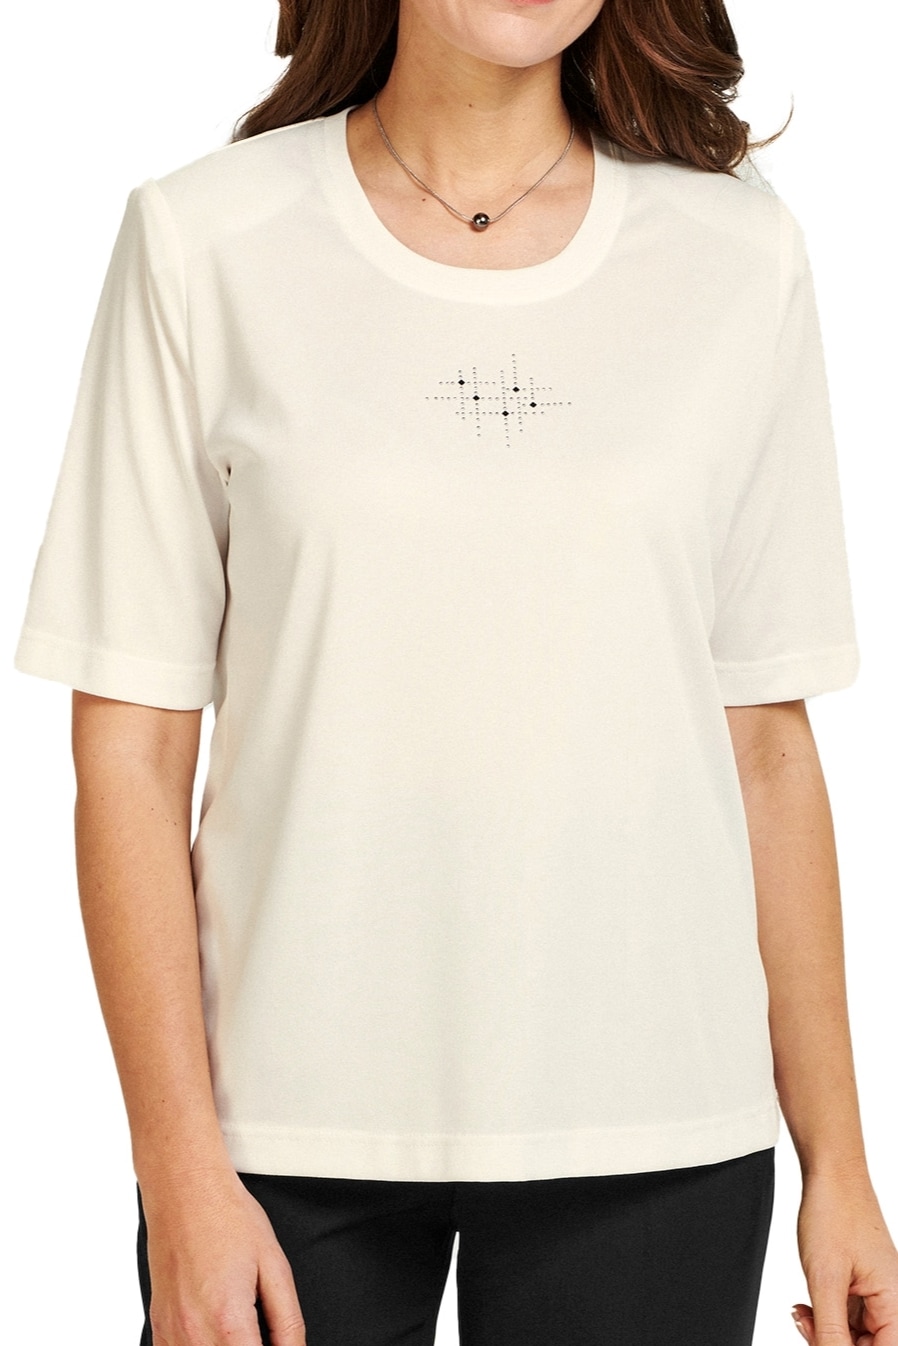 AZ Modell Shirtbluse » 0049 / Jerseyshirt Andorr...